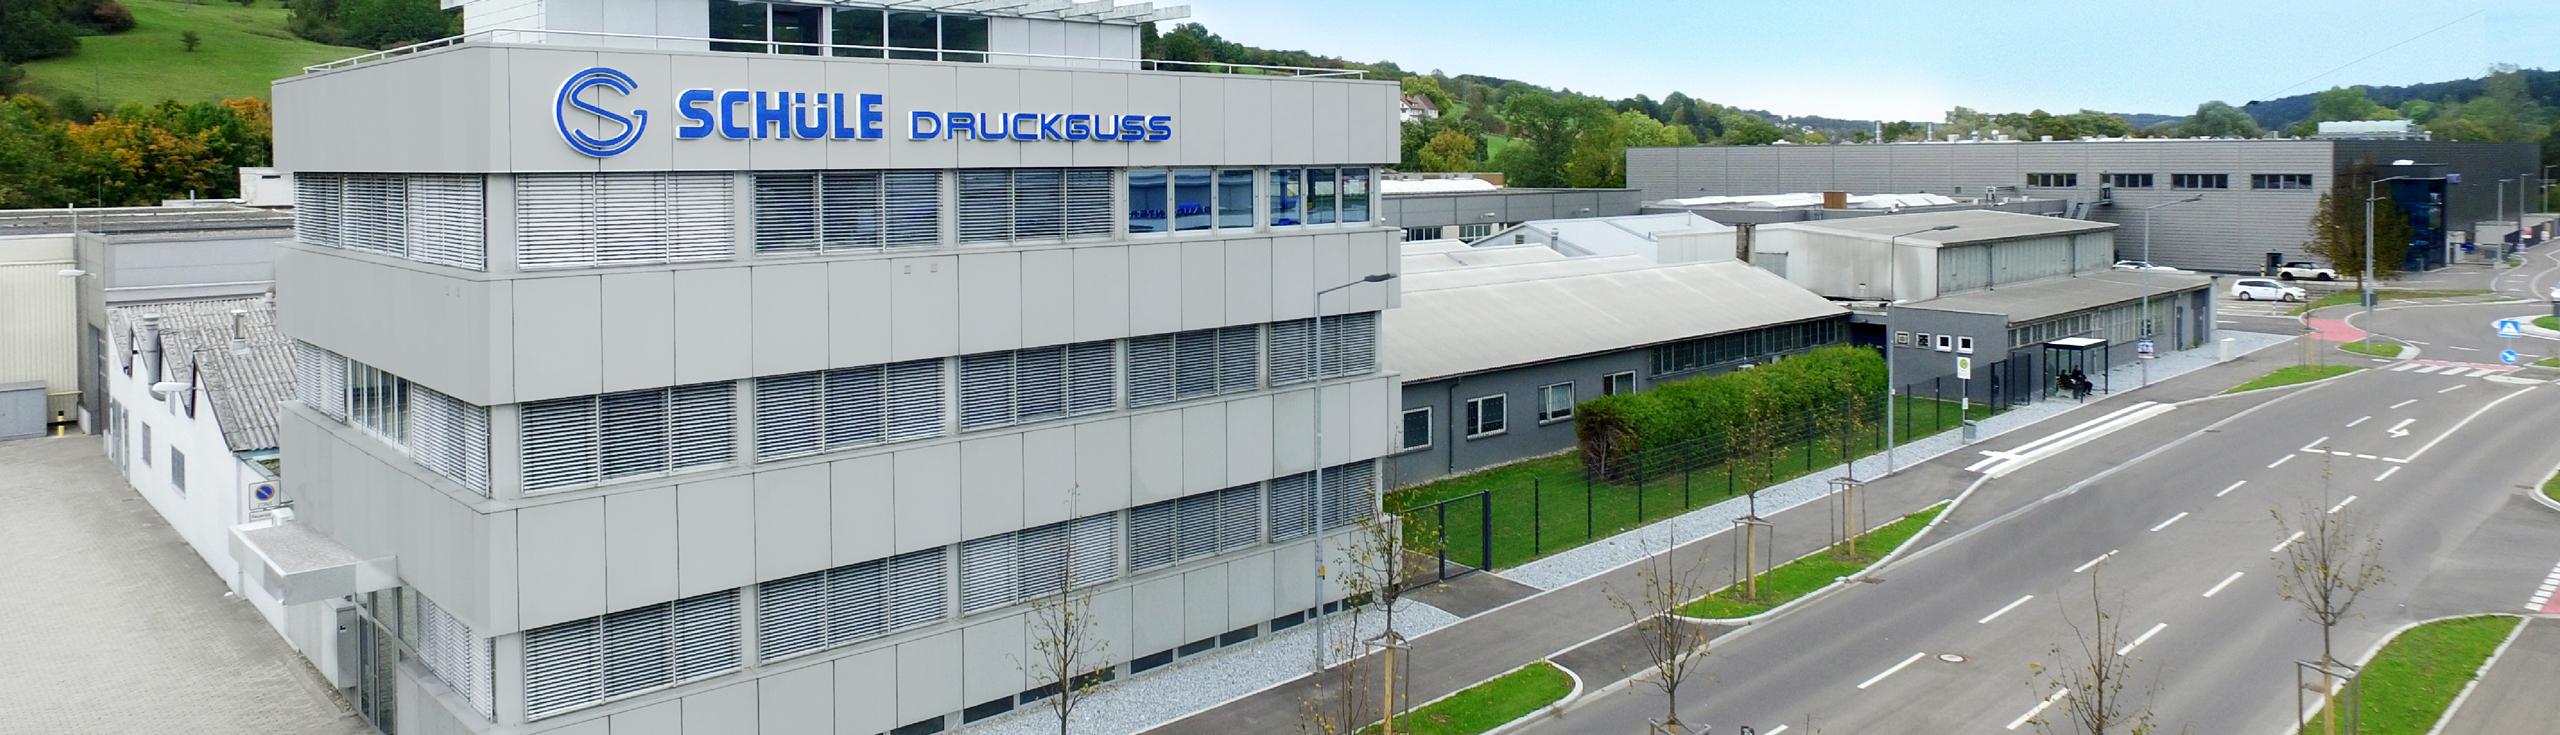 Schüle Druckguss GmbH, Standort Schwäbisch Gmünd